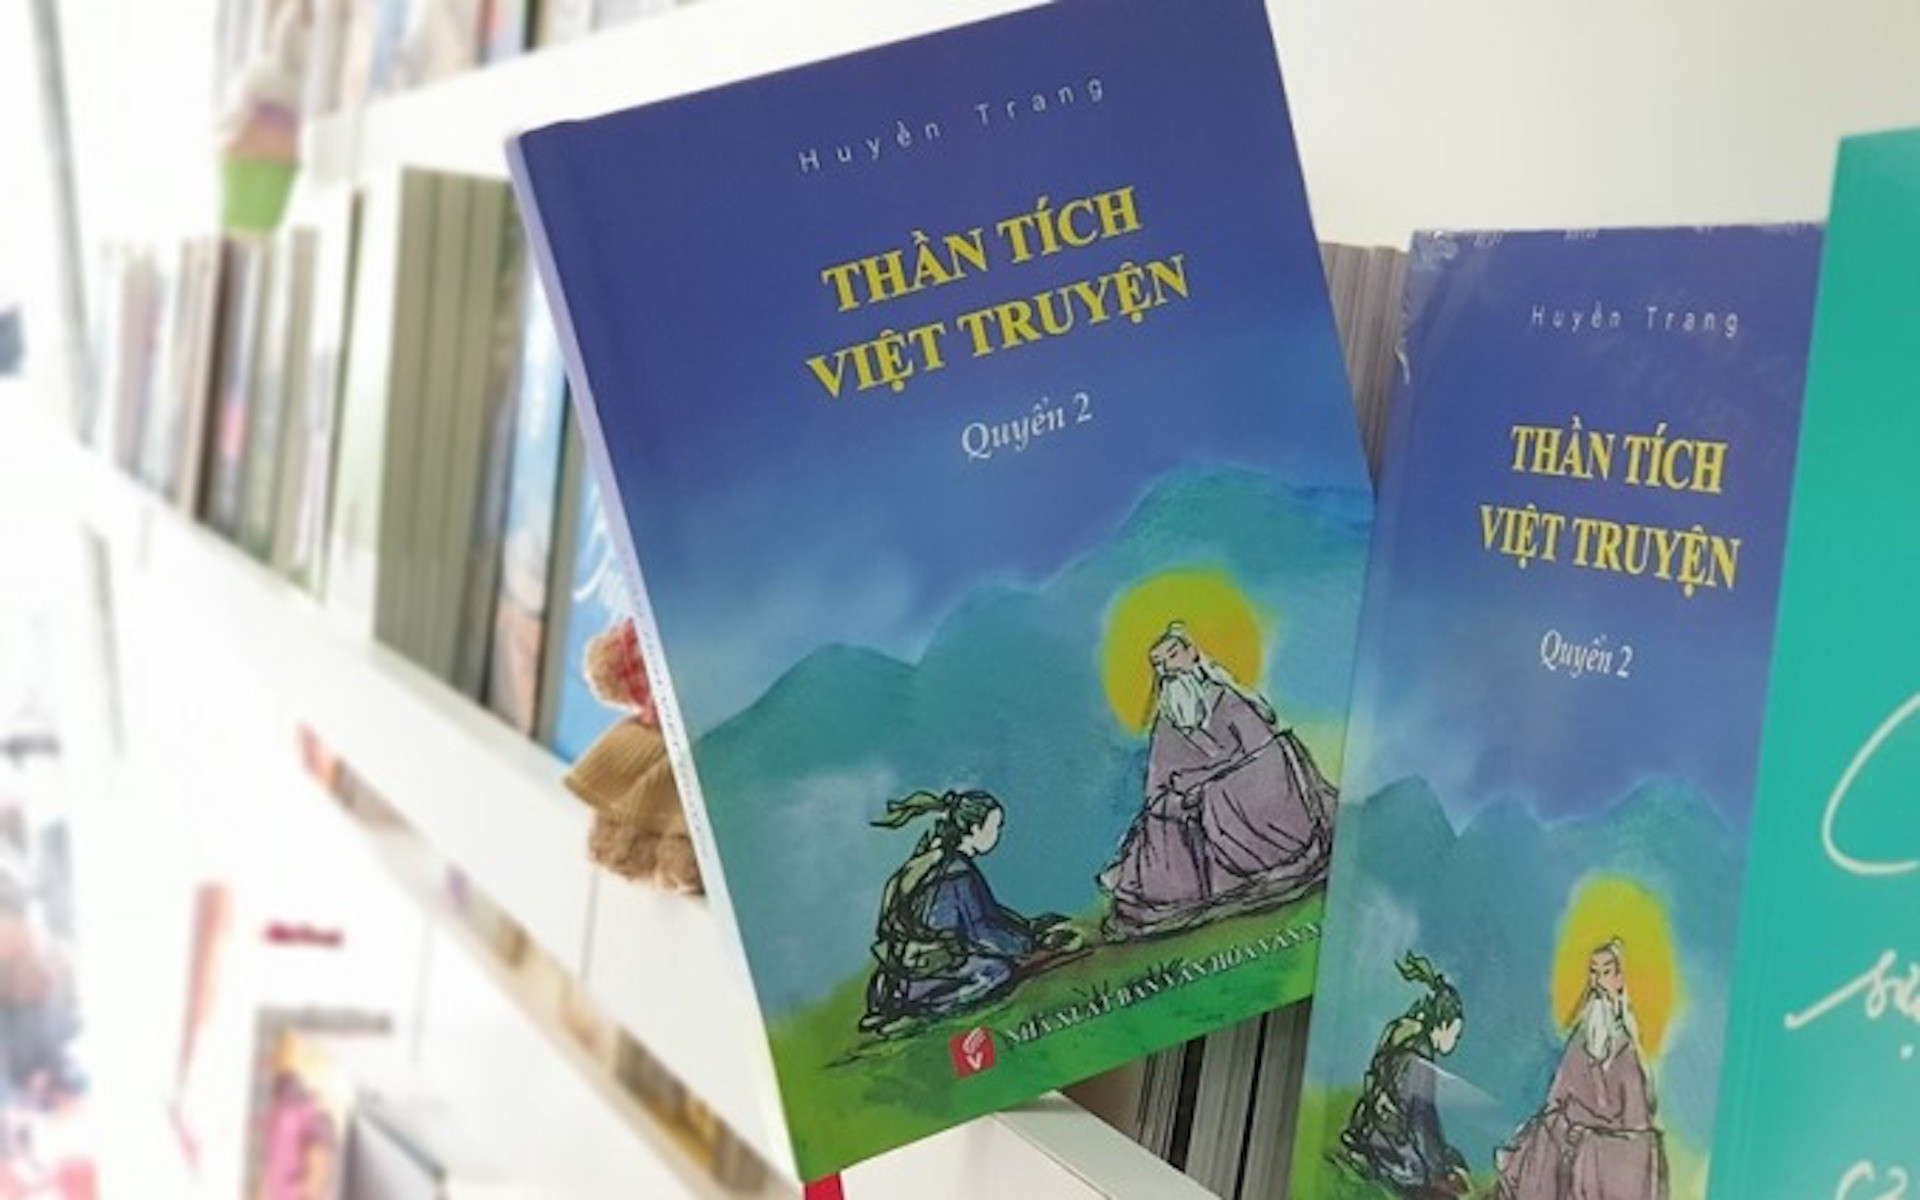 'Thần tích Việt truyện' - hơi thở mới về truyện cổ tích Việt Nam - 1